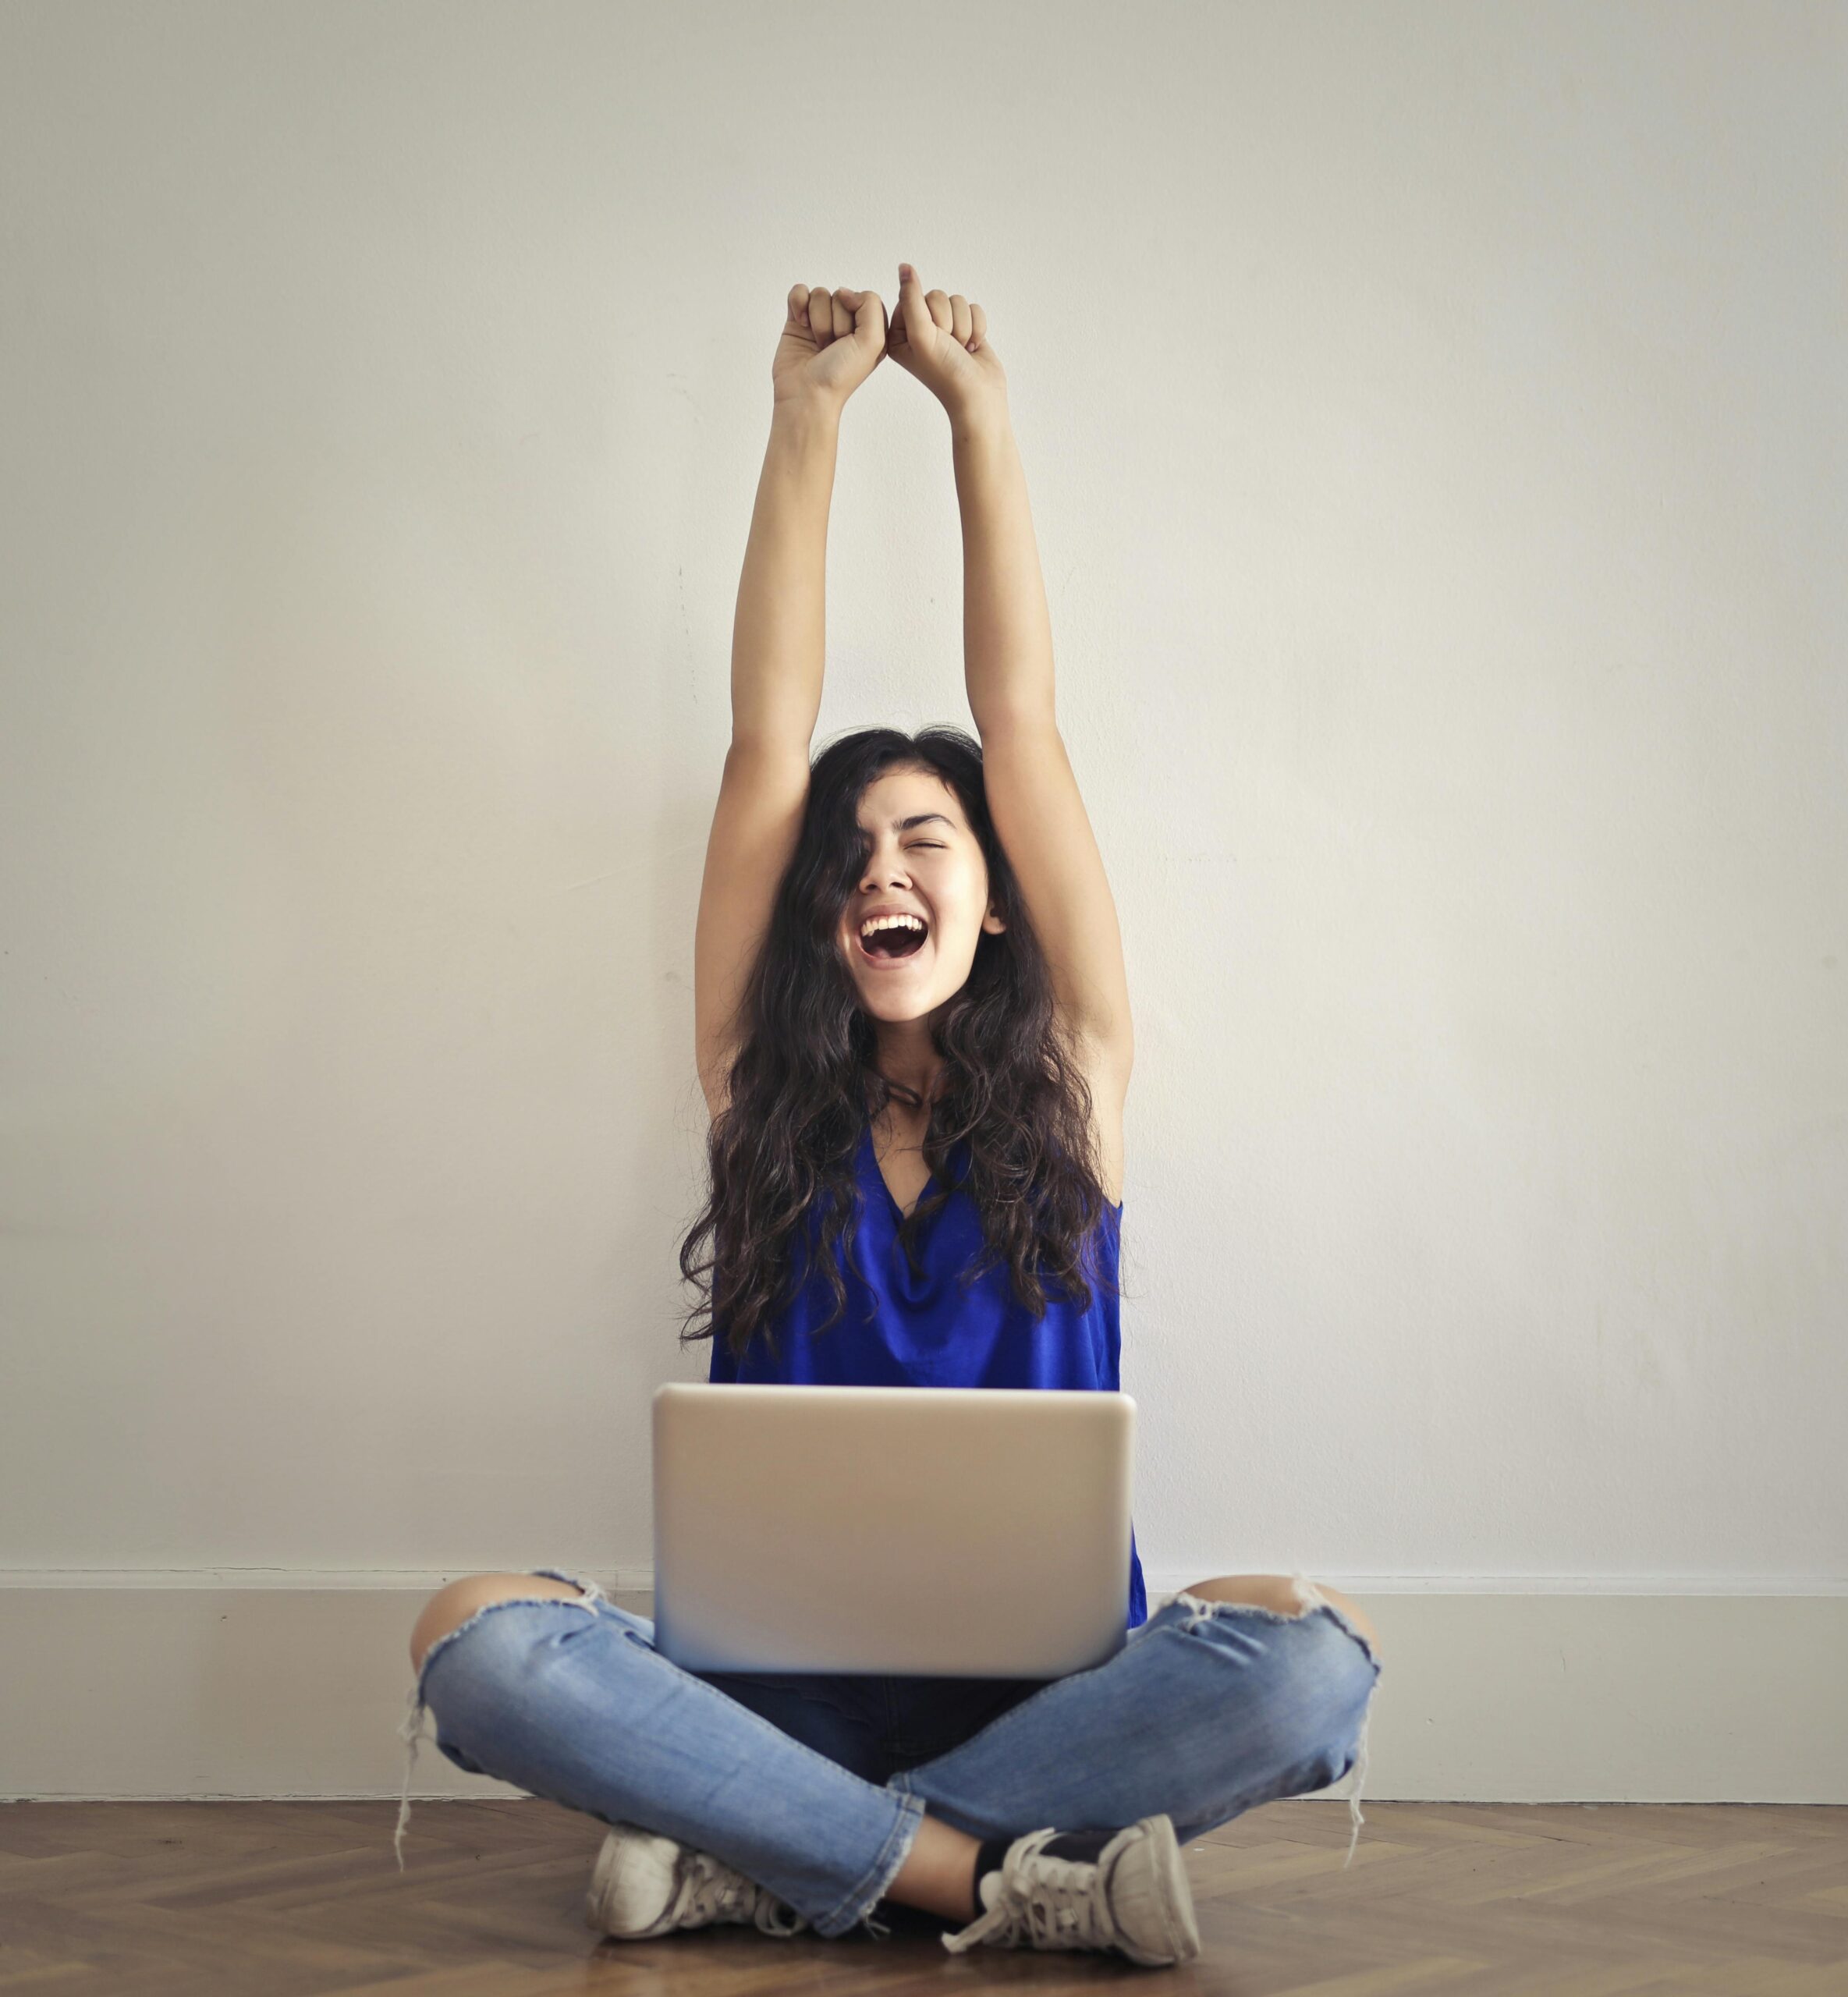 パソコンを膝の上において手を挙げて喜ぶ女性